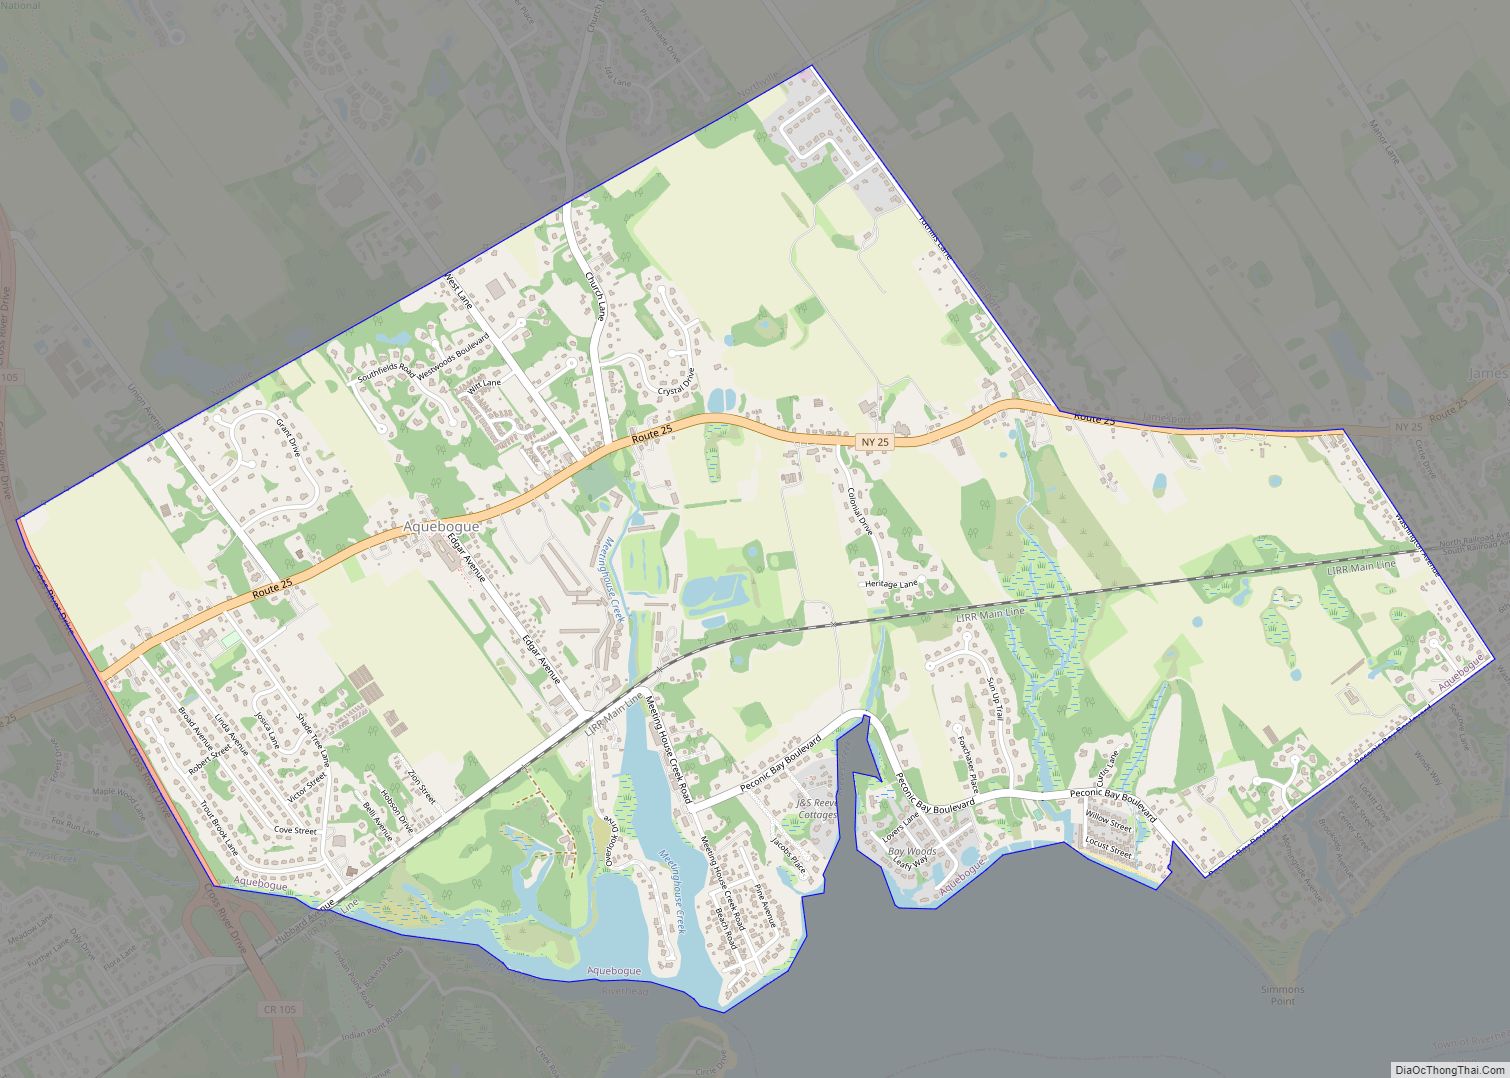 Map of Aquebogue CDP